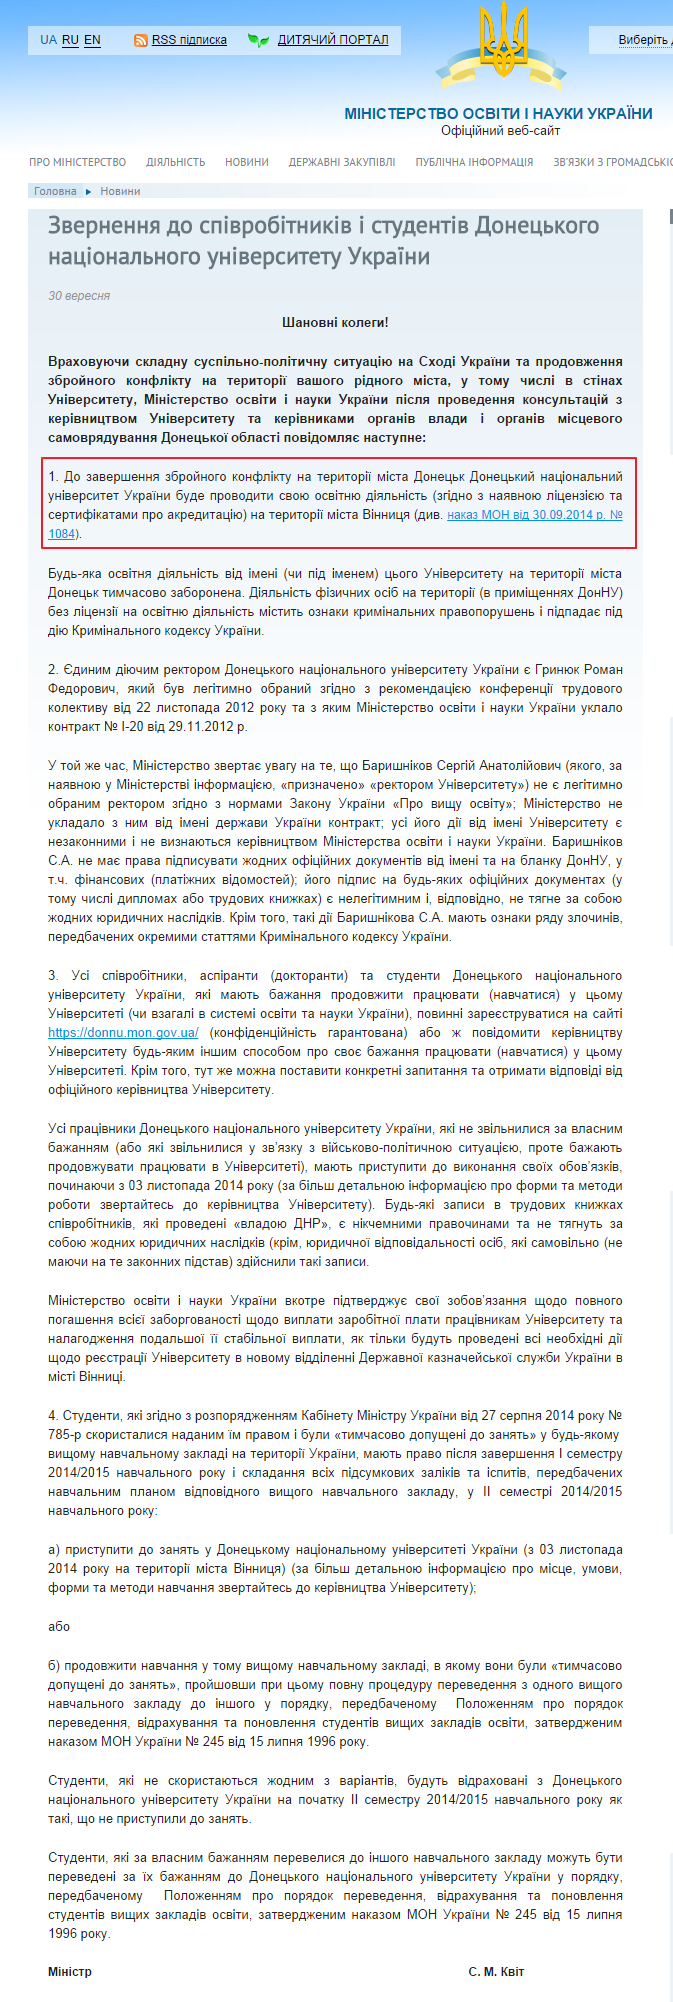 http://mon.gov.ua/ua/news/37512-zvernennya-do-spivrobitnikiv-i-studentiv-donetskogo-natsionalnogo-universitetu-ukrayini